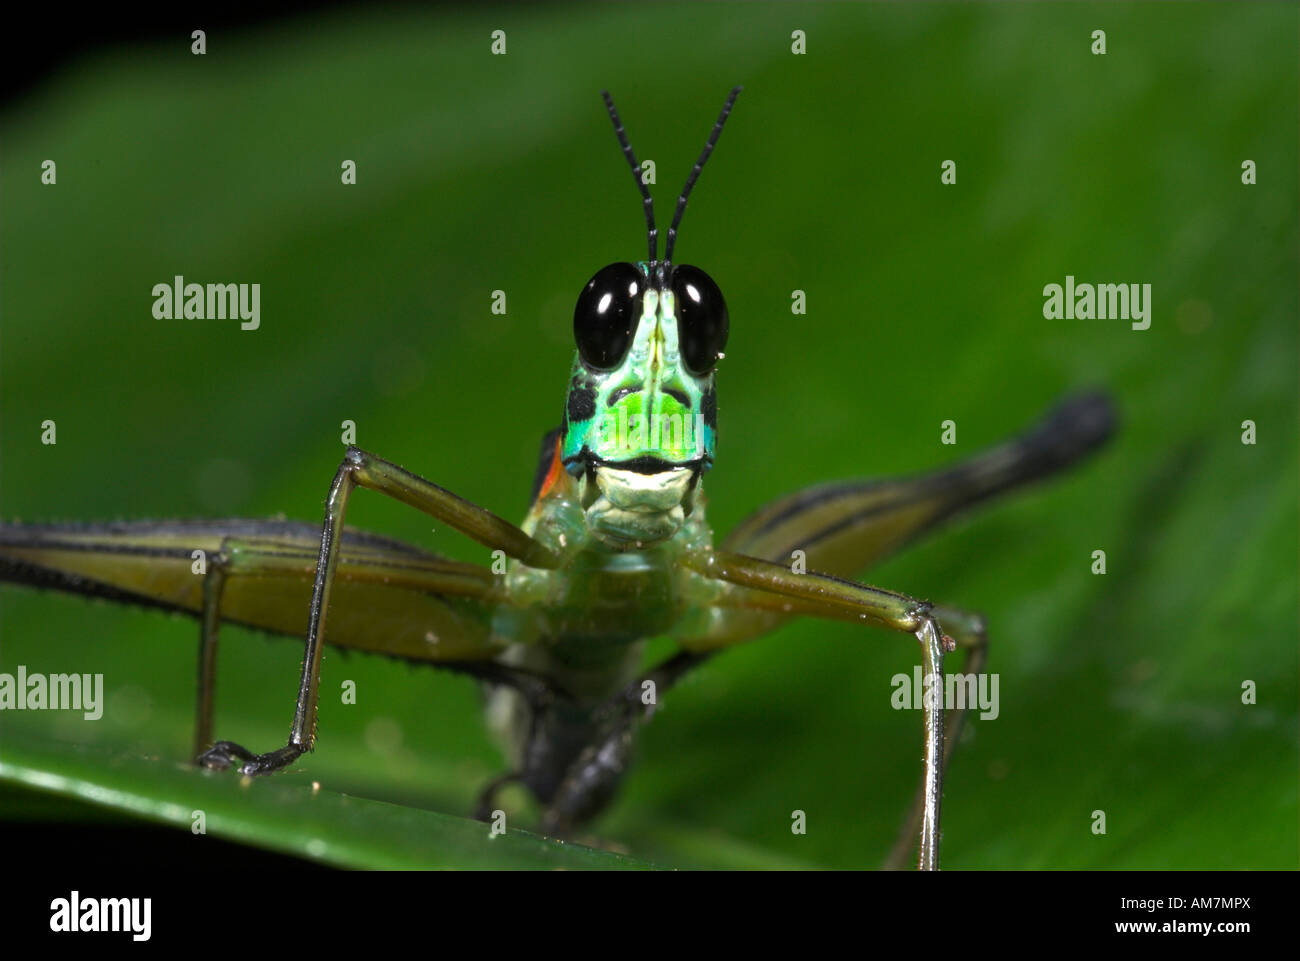 Airplane Grasshopper Eumastricidae sp. Manu Peru Stock Photo